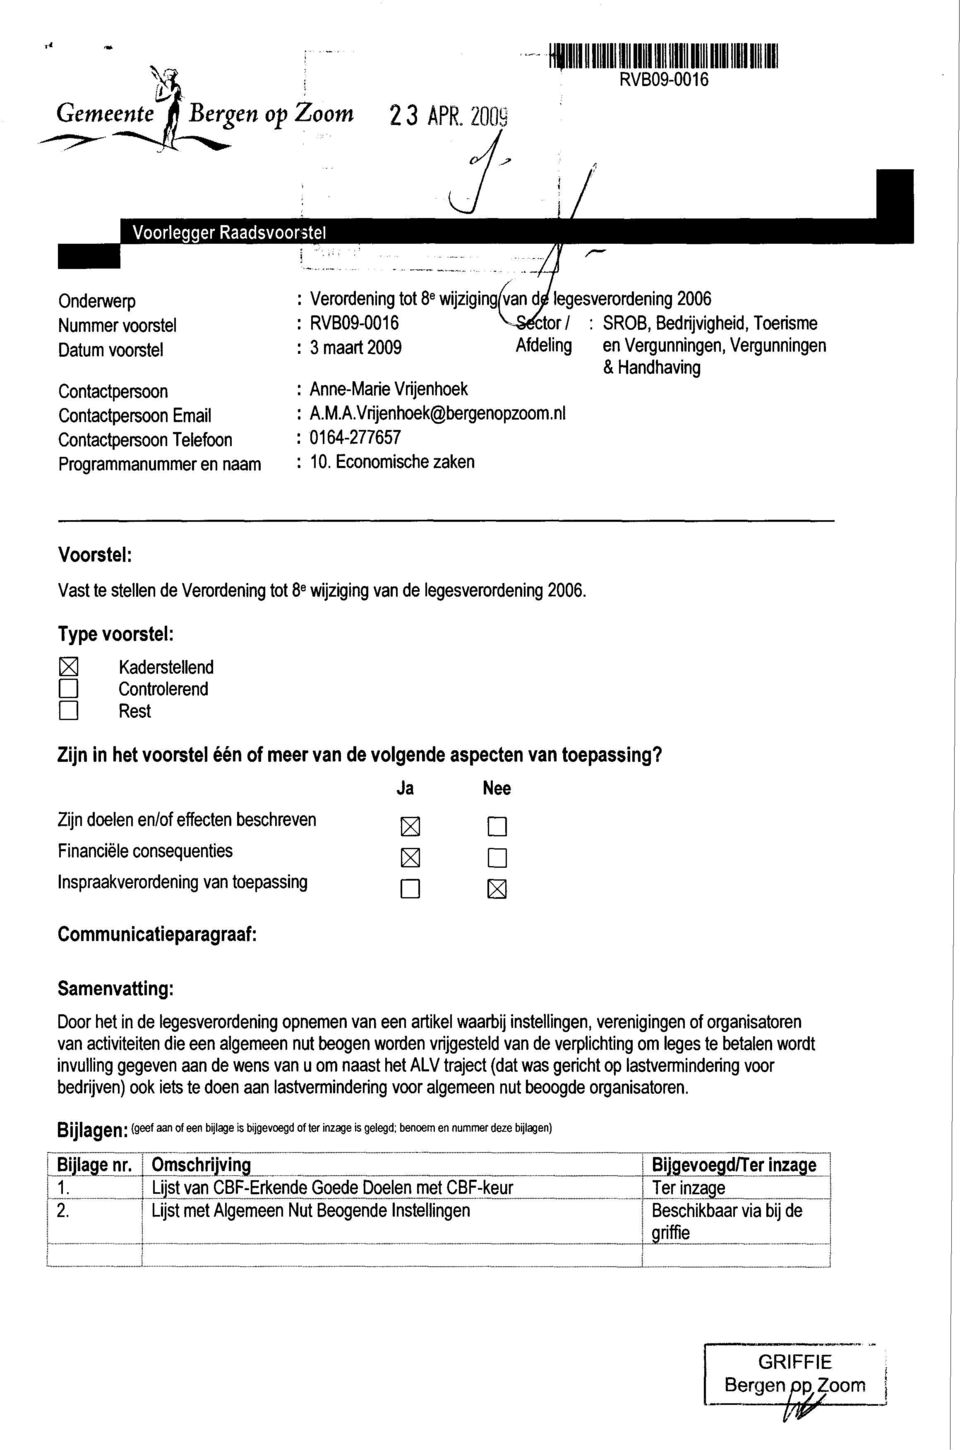 SROB, Bedrijvigheid, Toerisme : 3maart2009 Afdeling en Vergunningen, Vergunningen & Handhaving Anne-Marie Vrijenhoek A.M.A.Vrijenhoek@bergenopzoom.nl 0164-277657 10.